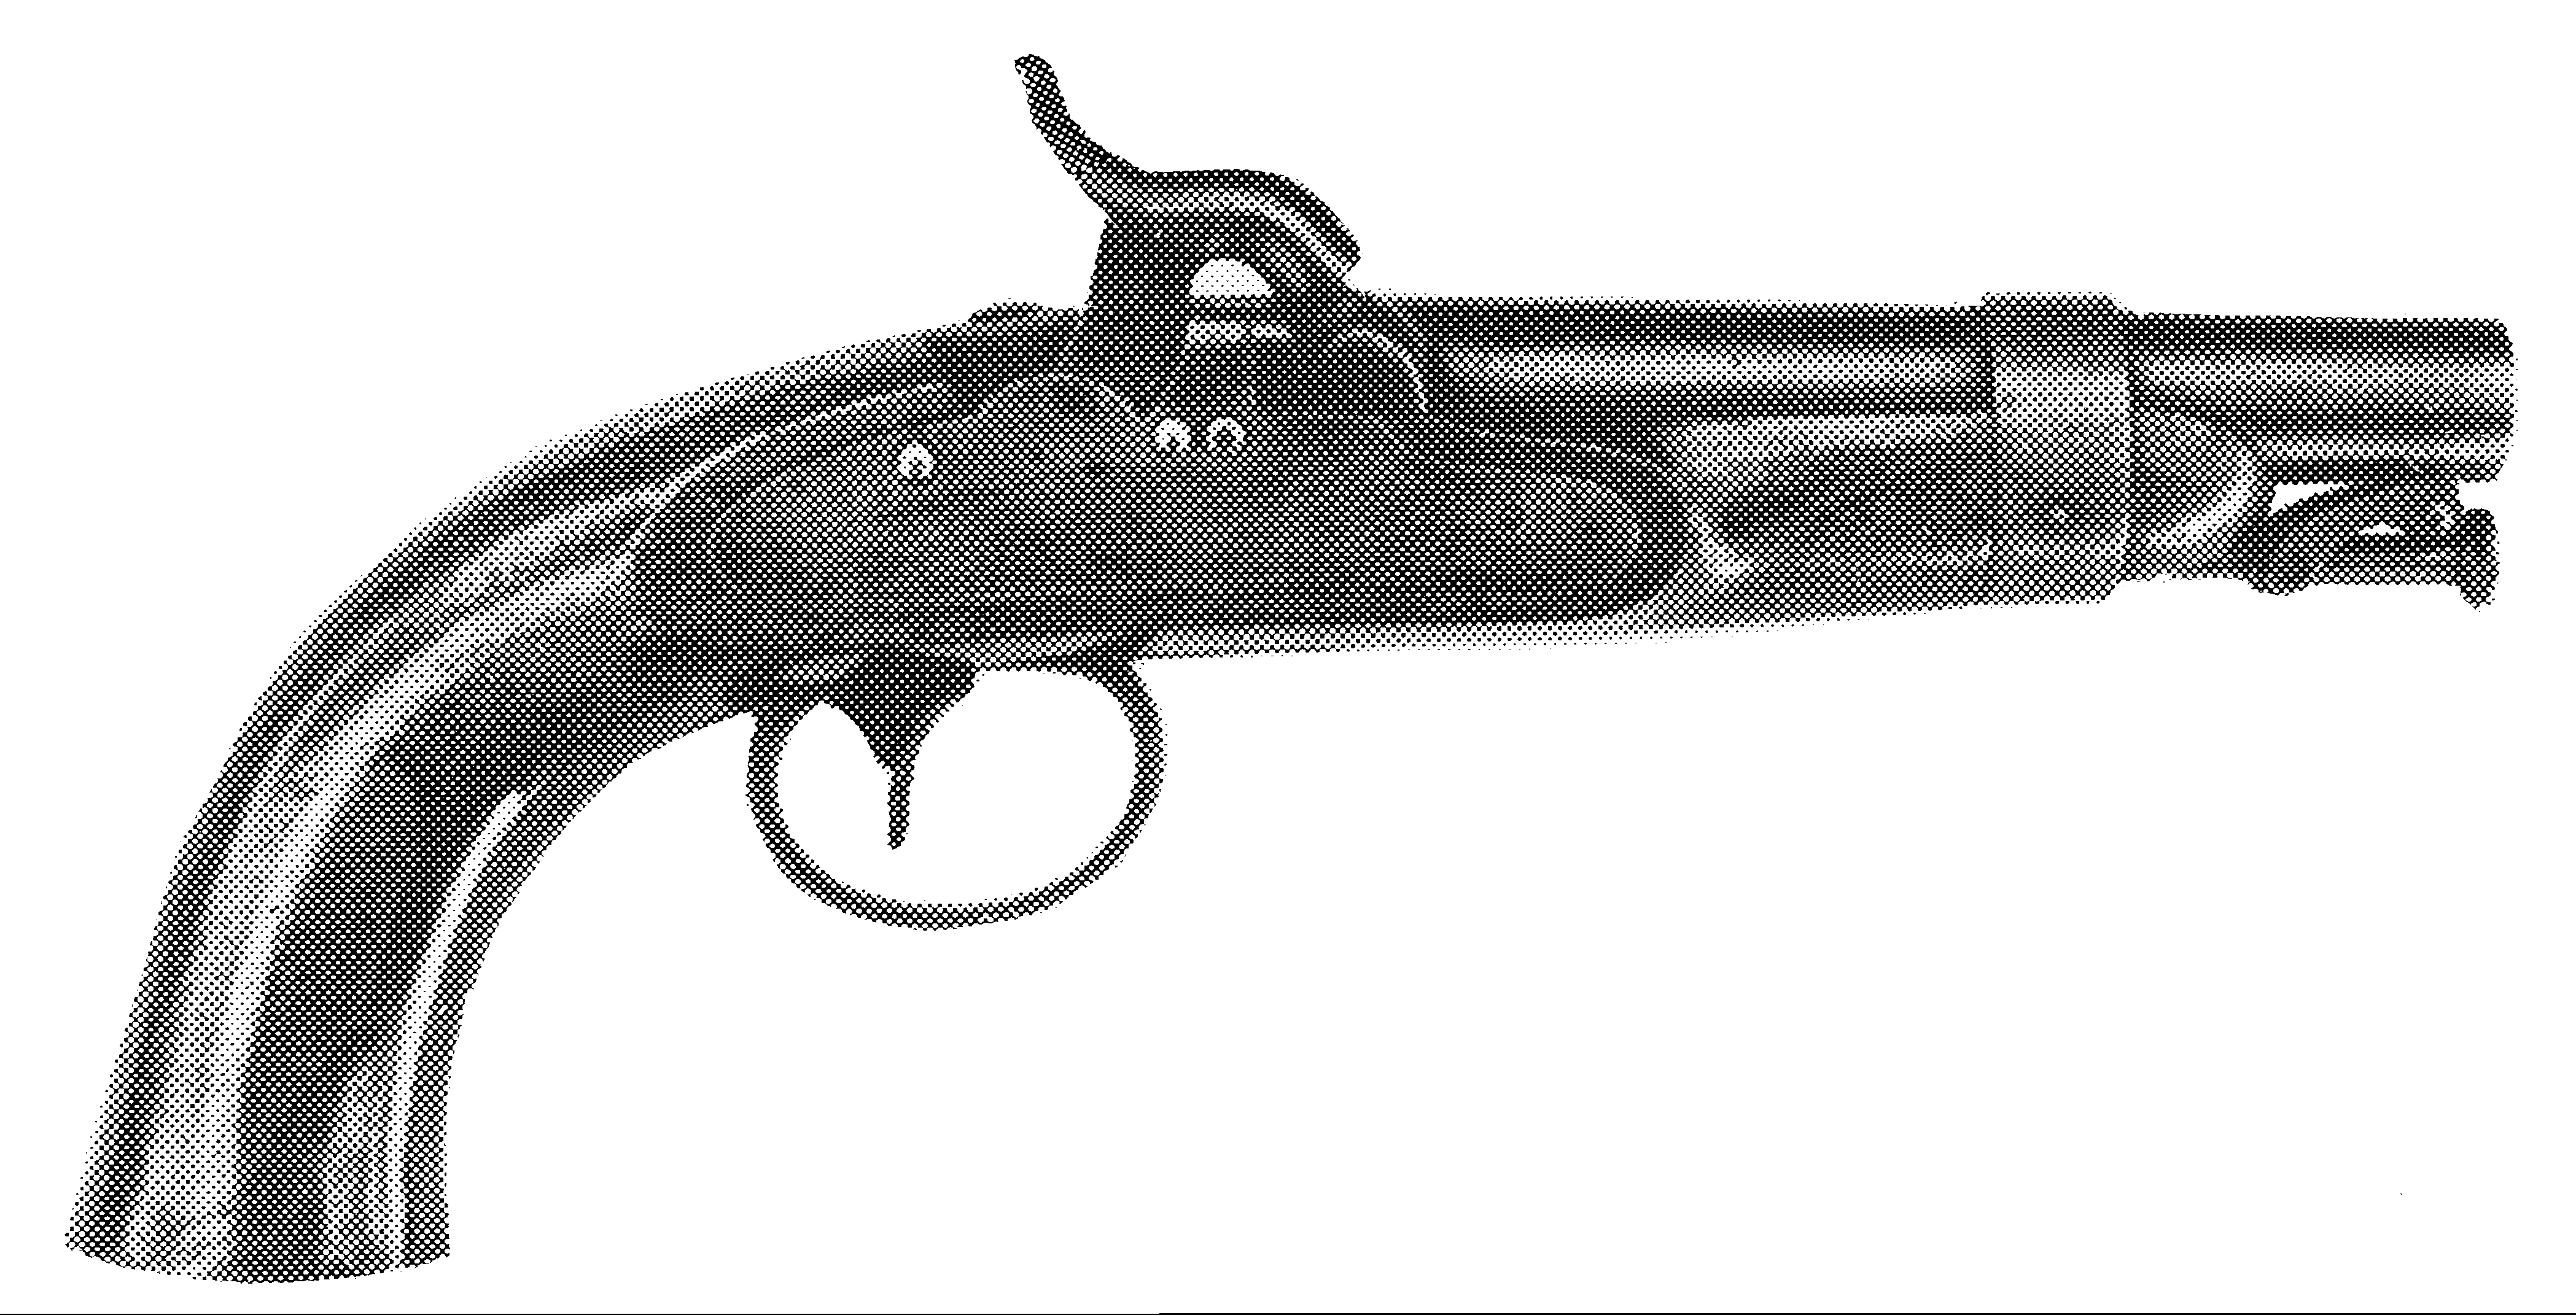 Model 1842 US Navy Pistol